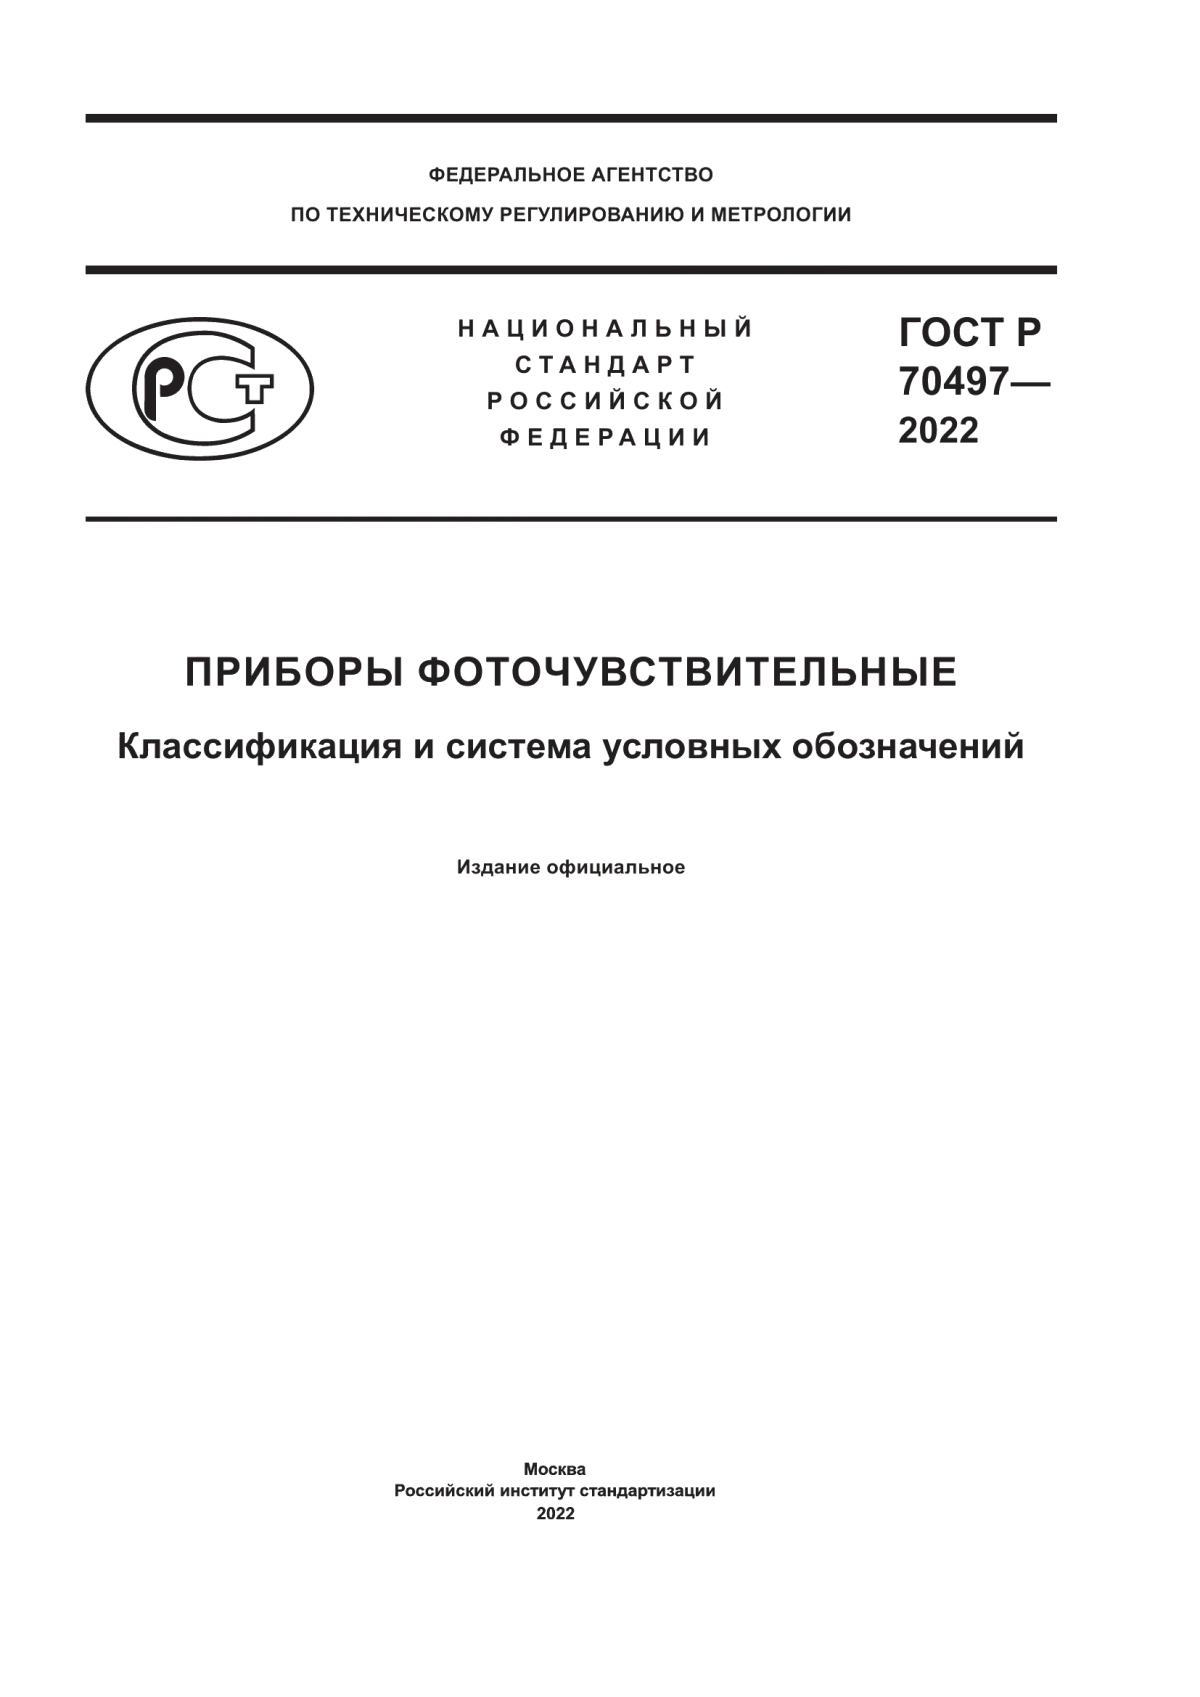 ГОСТ Р 70497-2022 Приборы фоточувствительные. Классификация и система условных обозначений